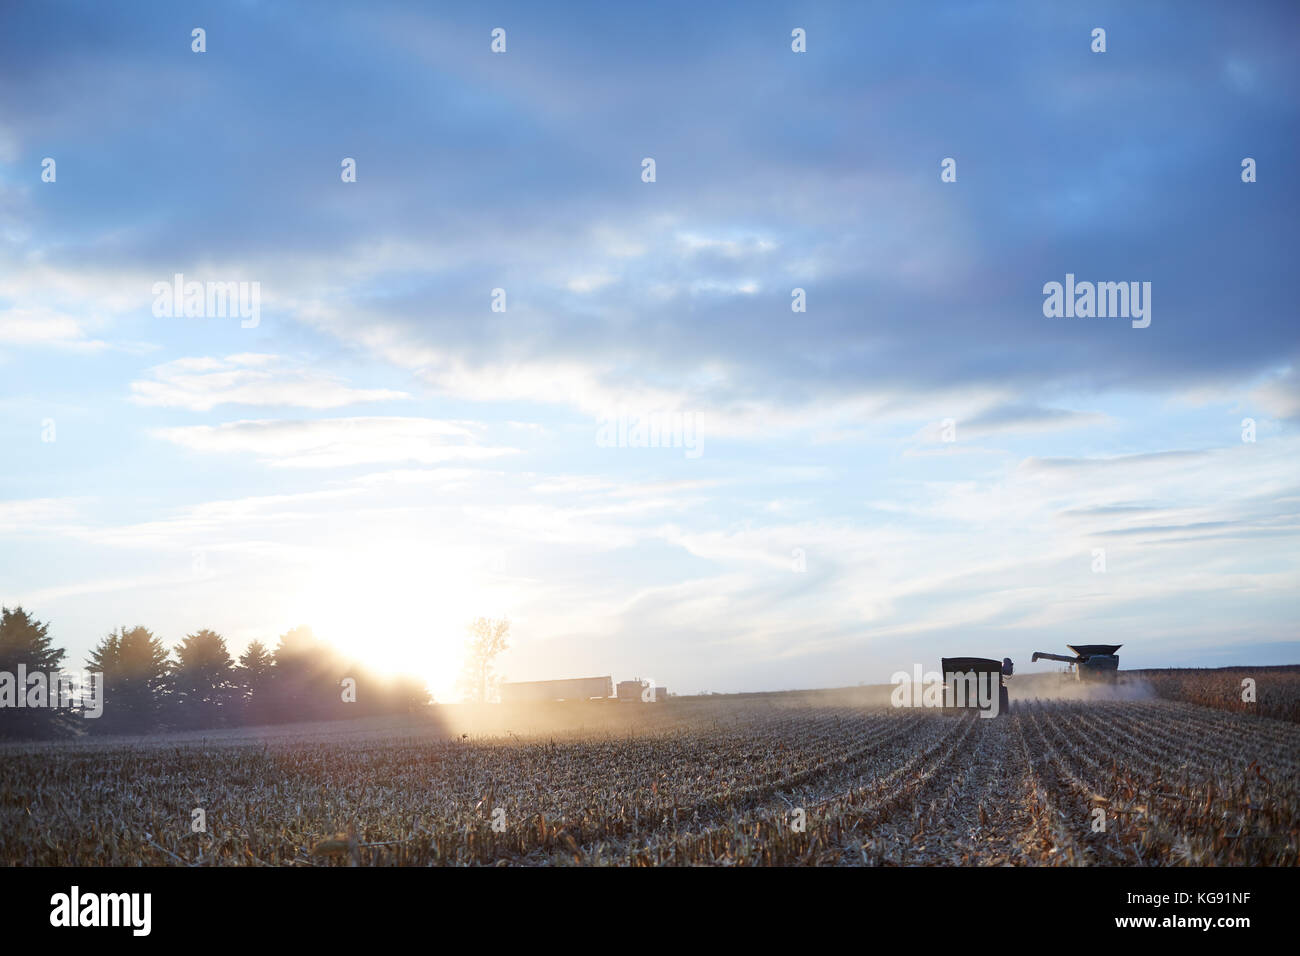 Gli agricoltori la raccolta di un ampio campo di mais al tramonto con le trebbiatrici mietitrebbia, il trattore e il rimorchio di un semi illuminato dal bagliore luminoso del sole all'orizzonte Foto Stock